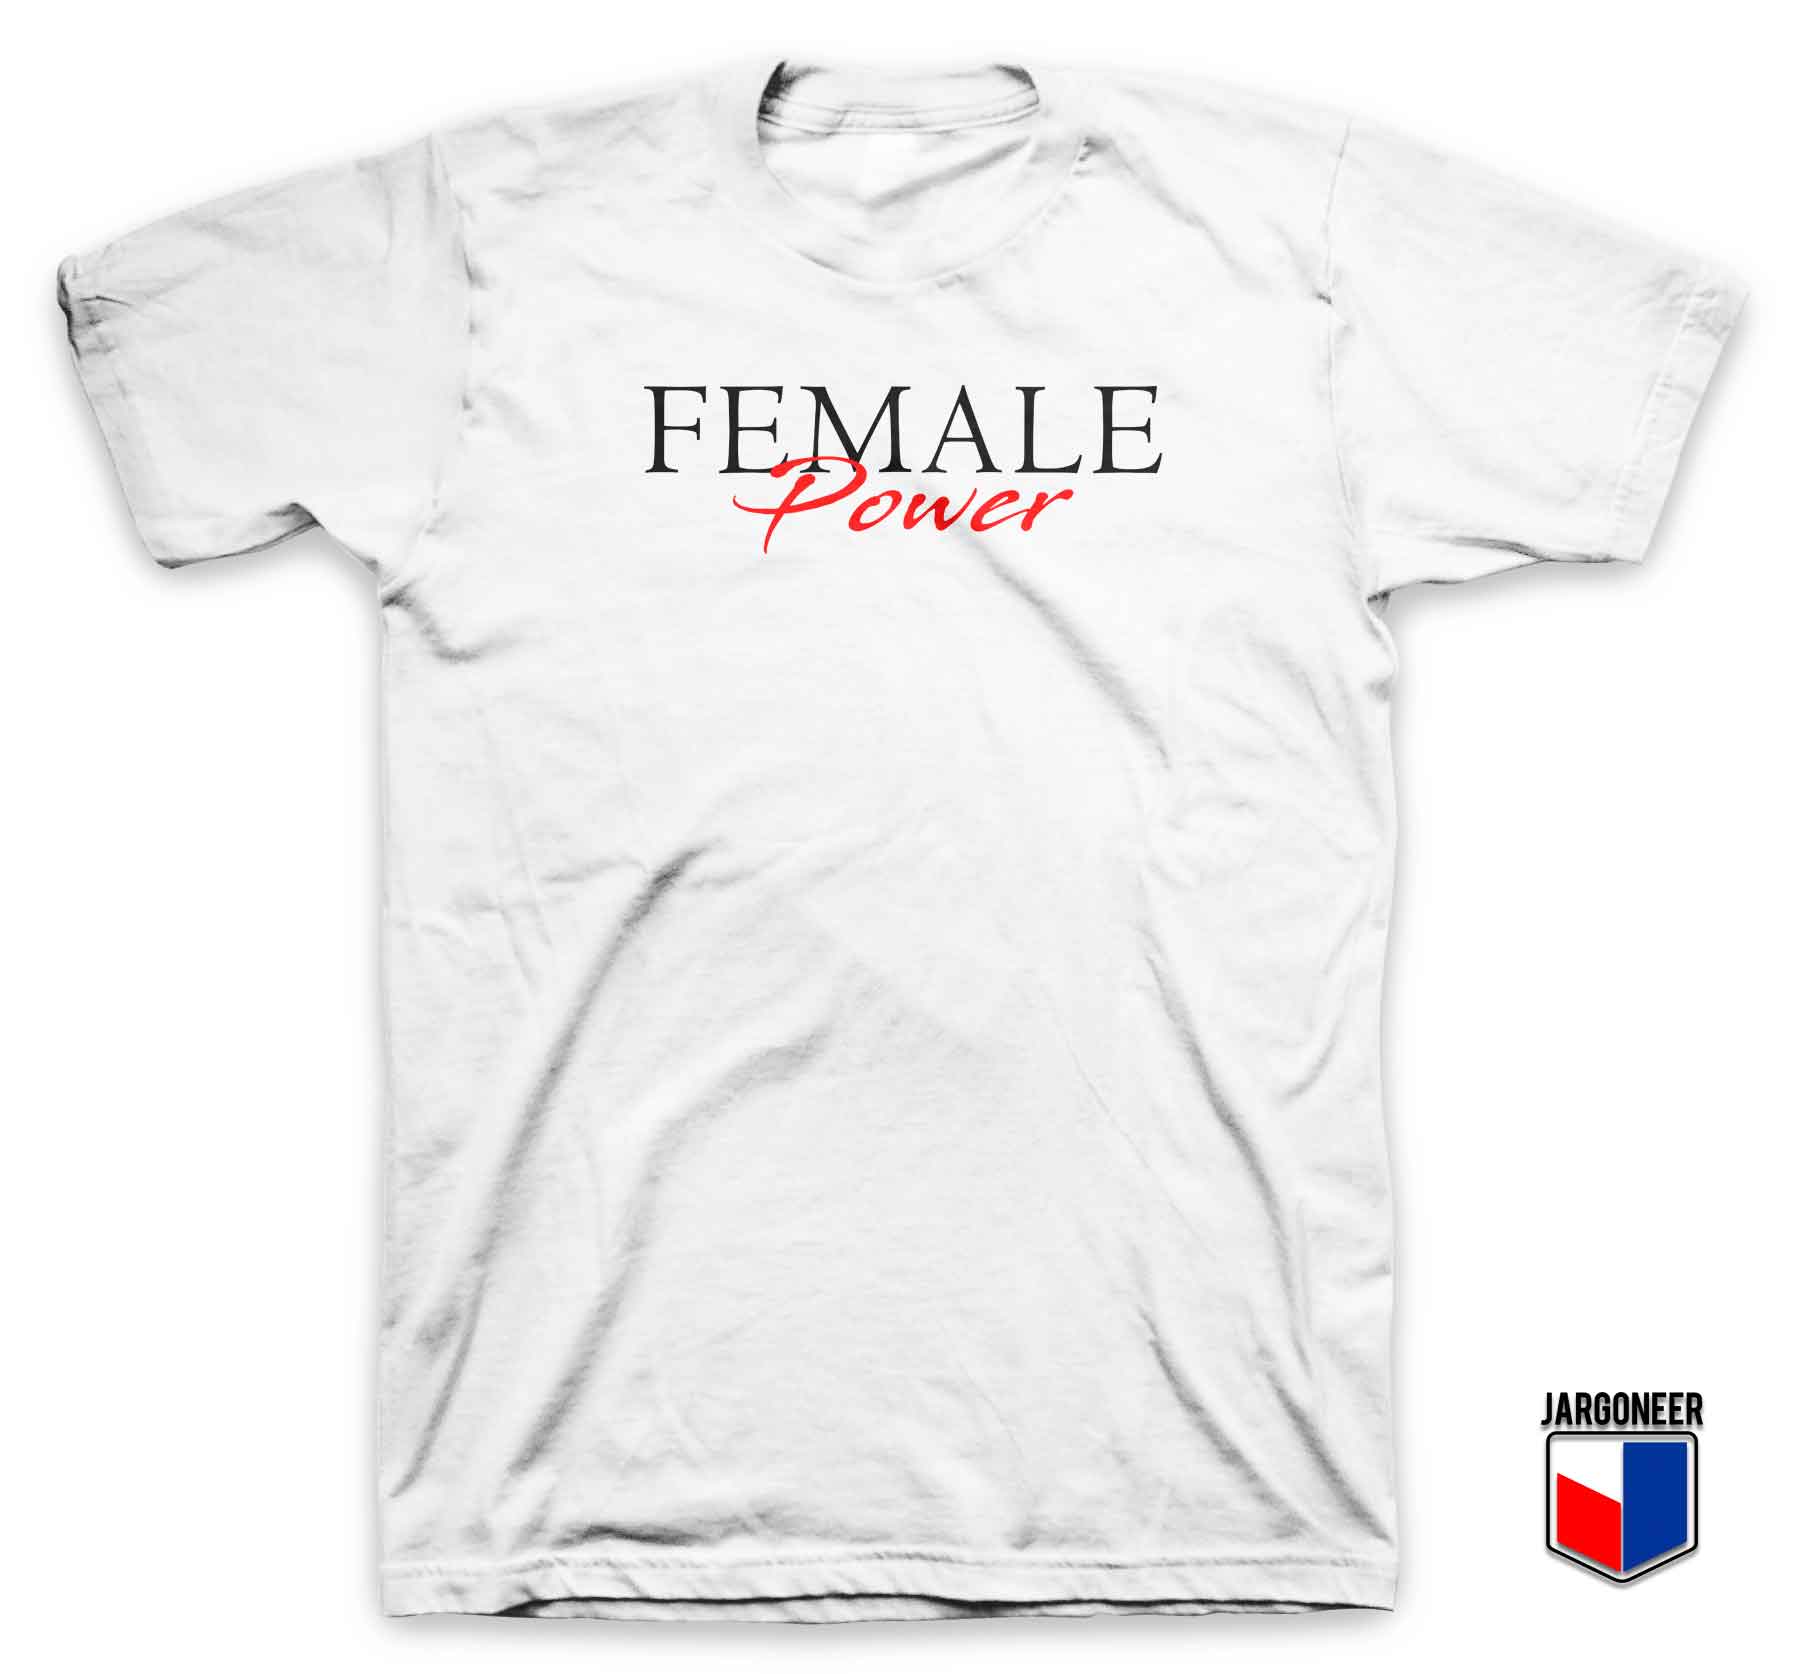 Female Power - Shop Unique Graphic Cool Shirt Designs